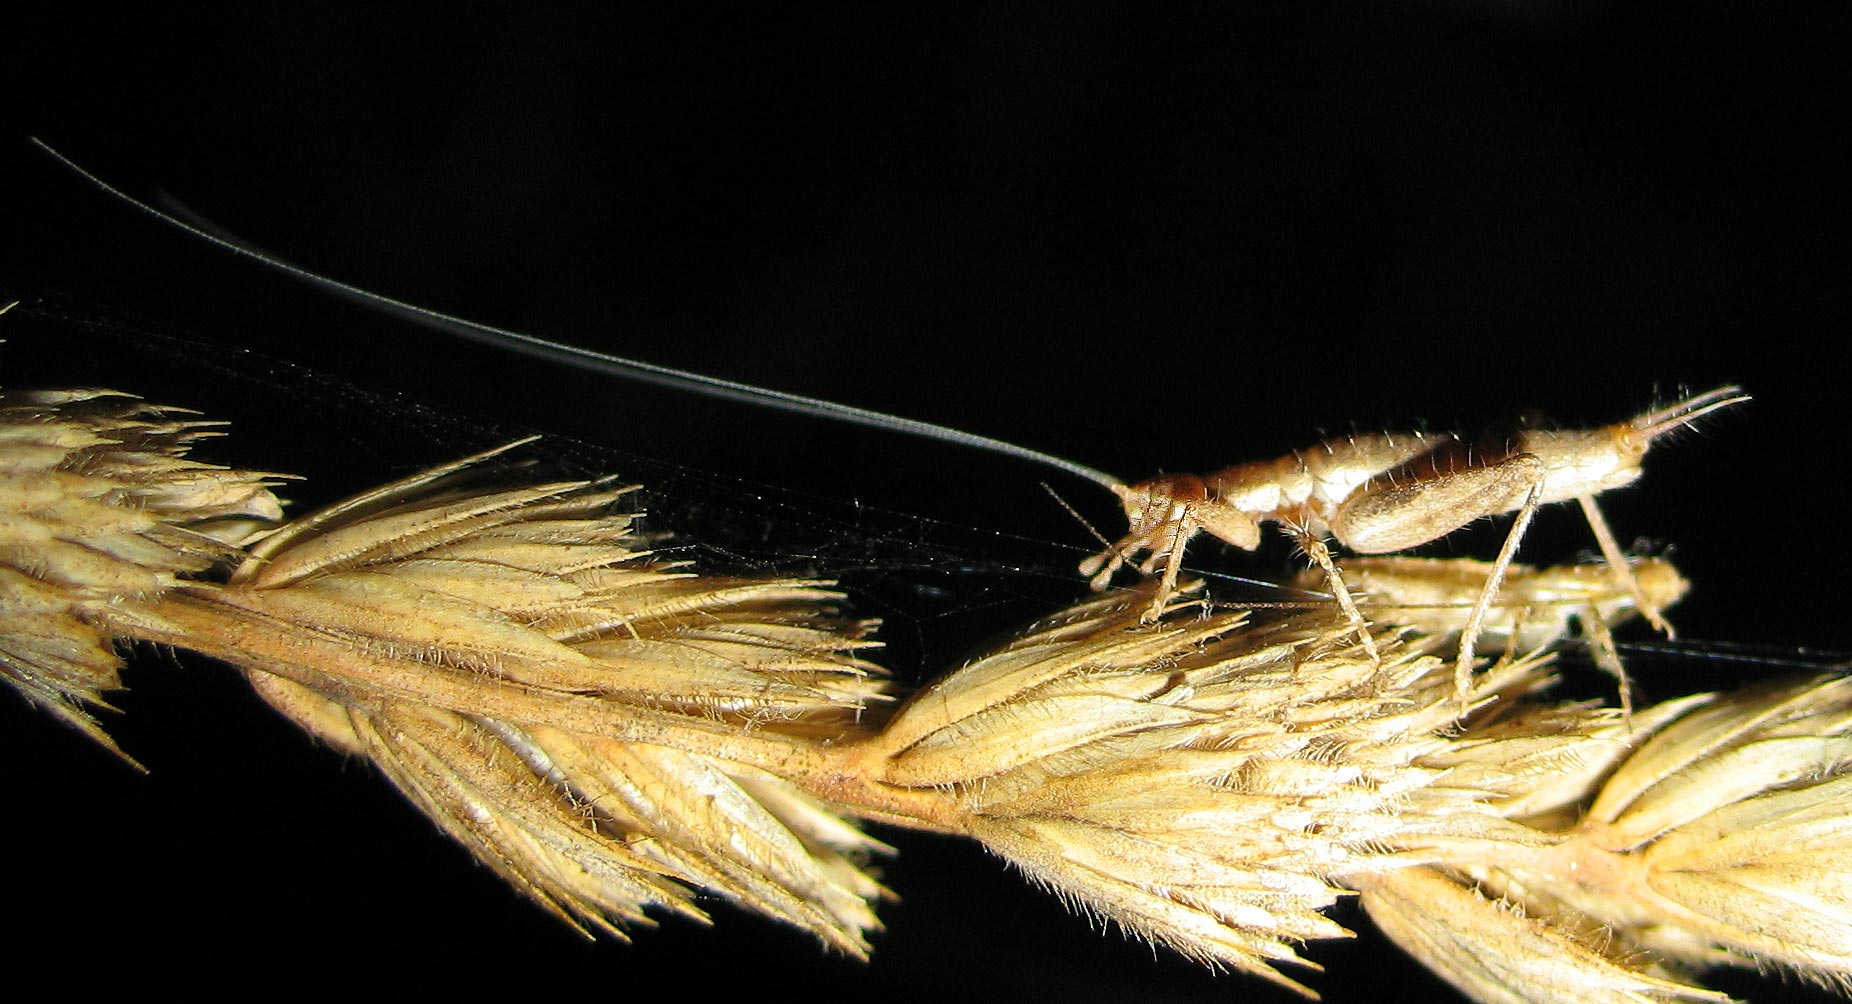 Arachnocephalus vestitus